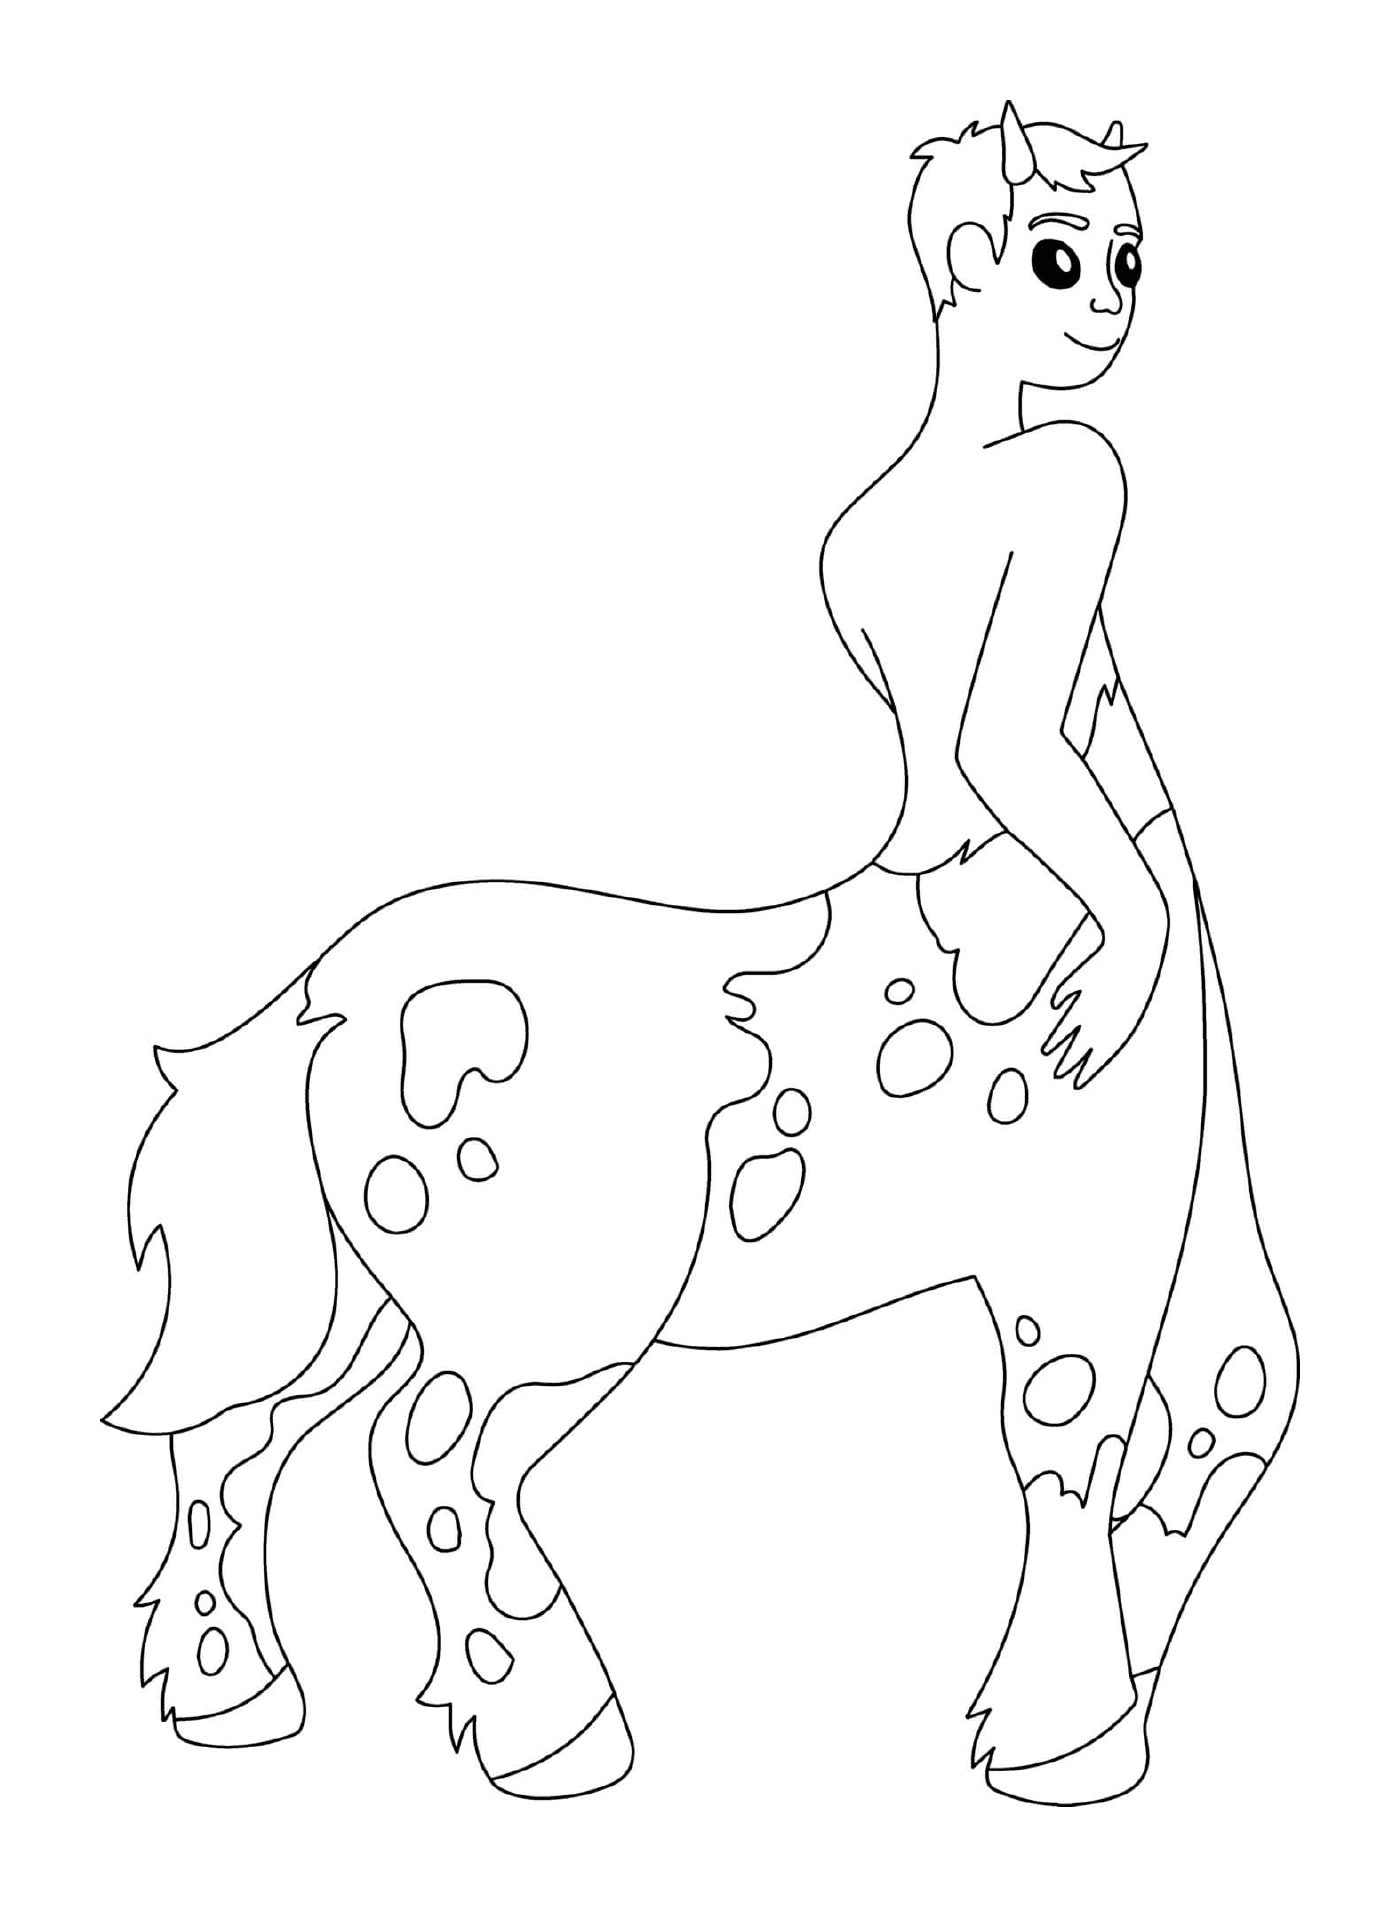  Mitologia greca a mezza cavalluccio di Centaur 